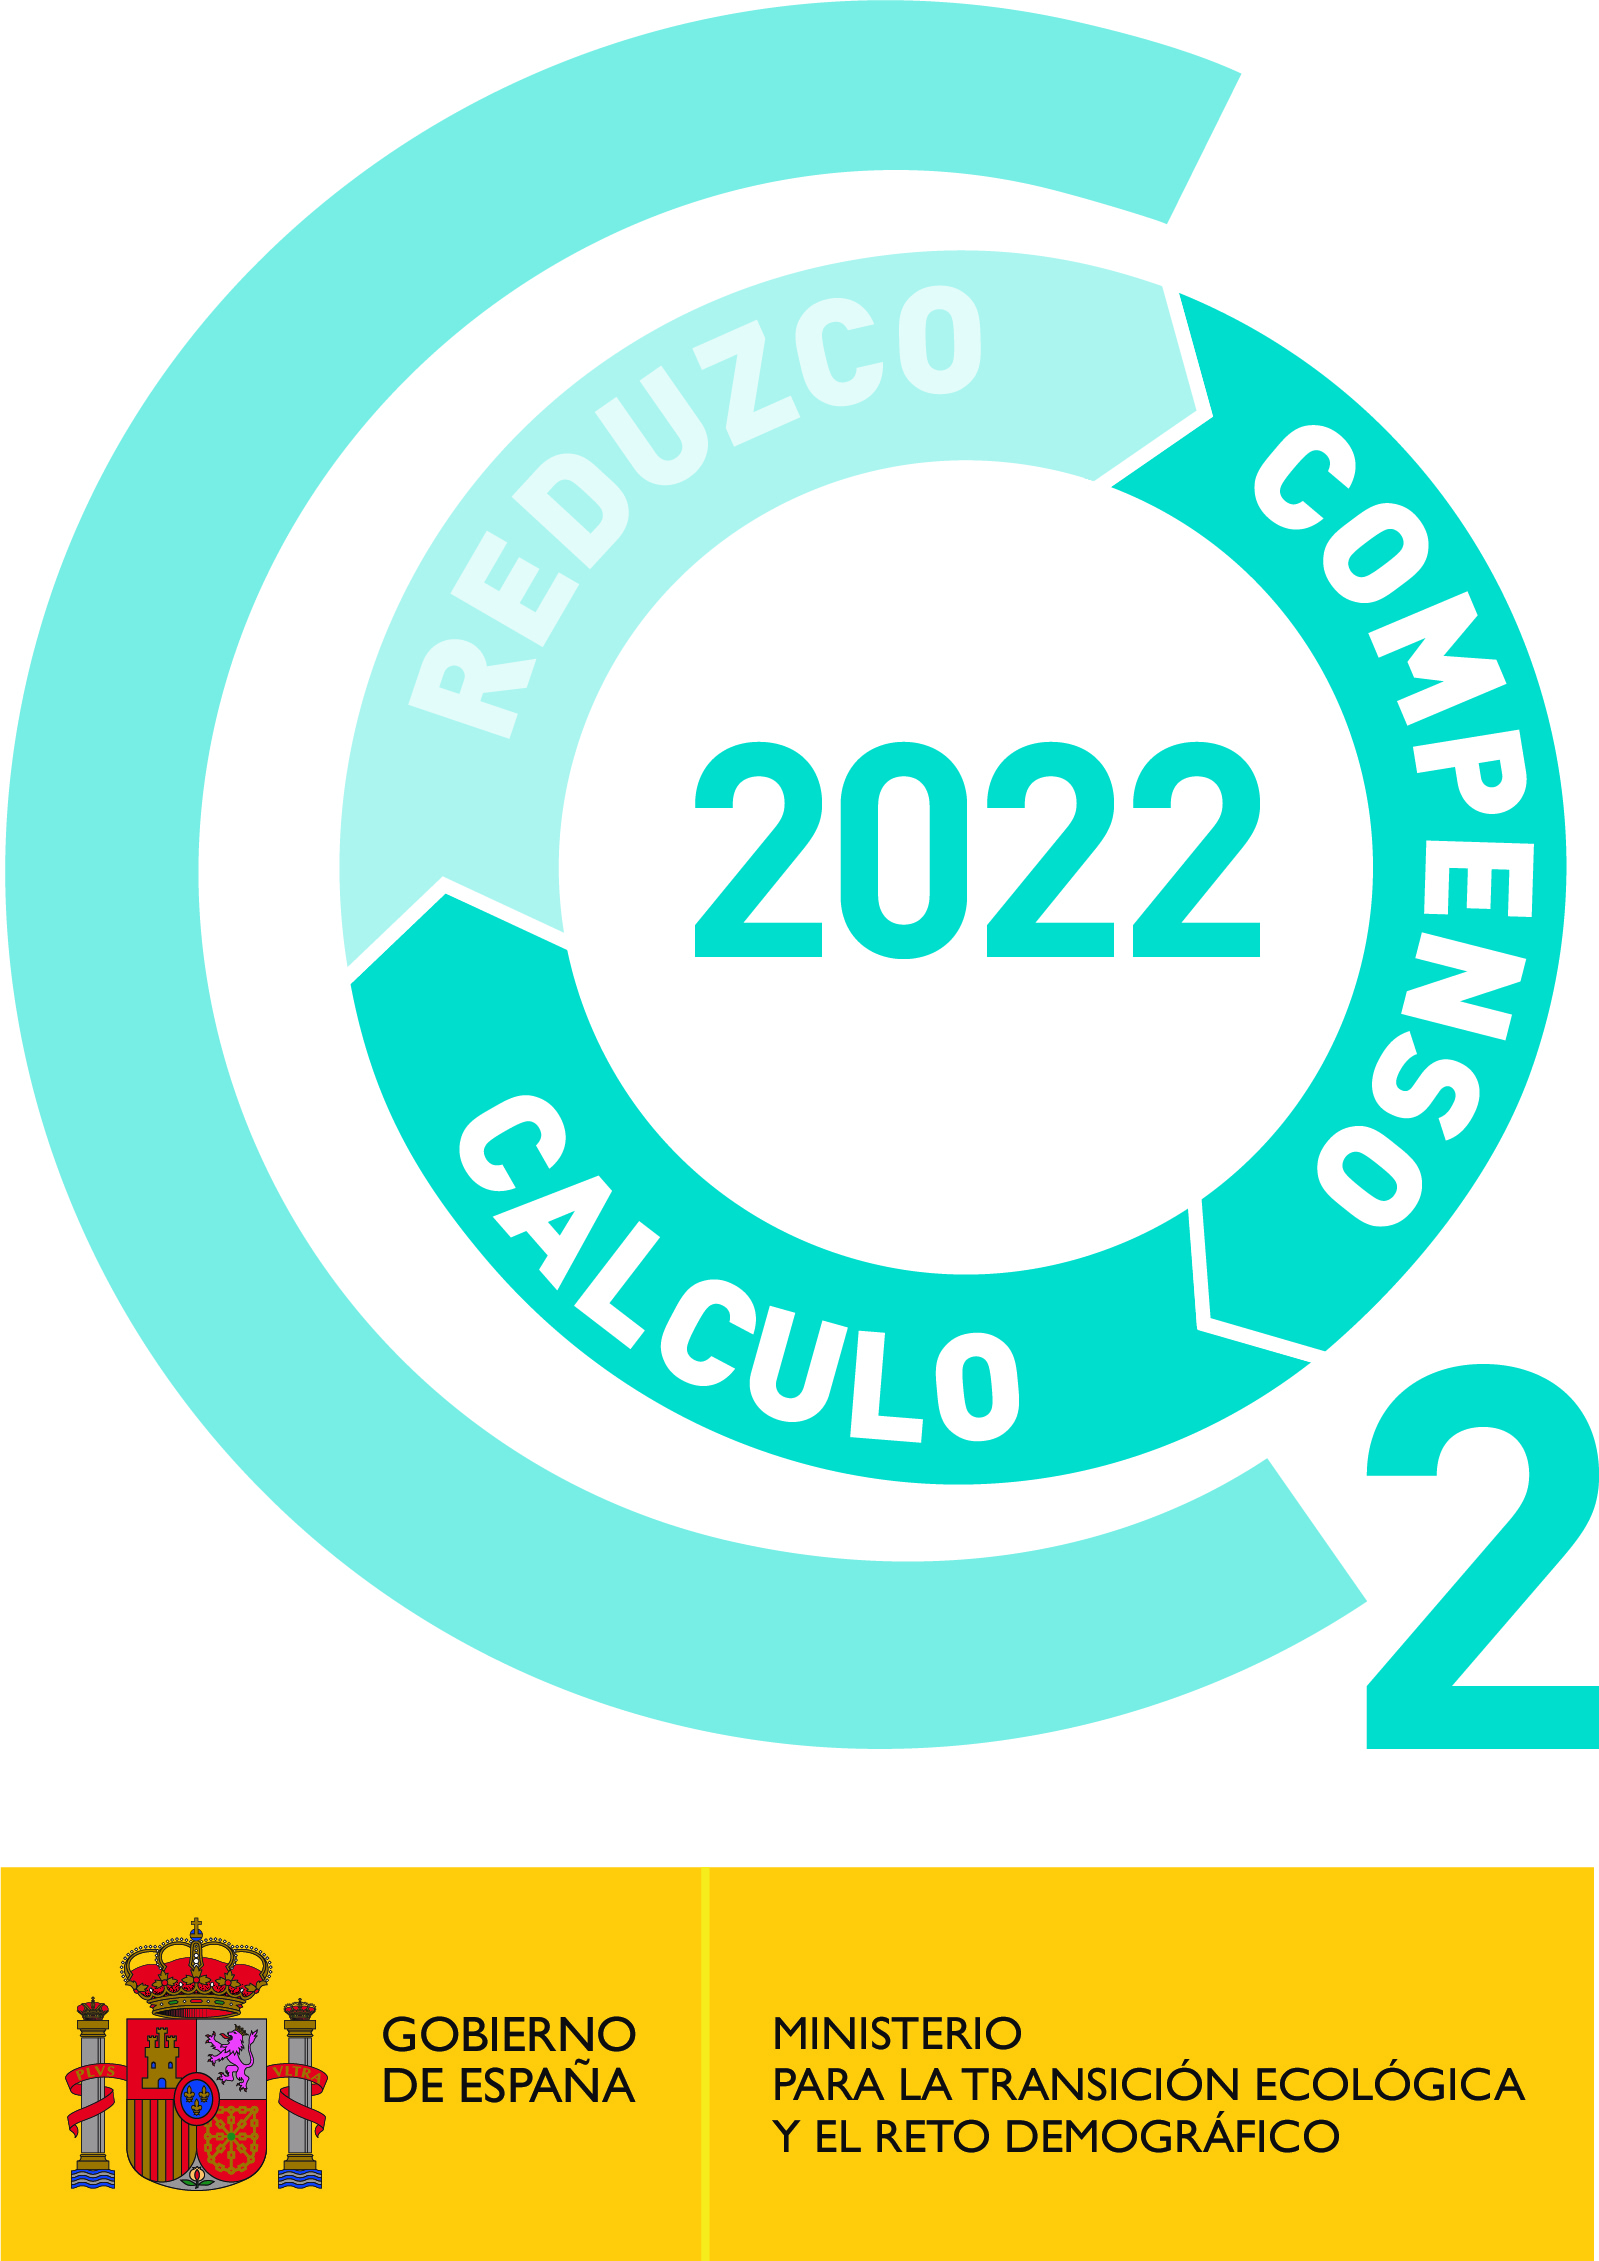 Sello "Calculo + Compenso" 2022